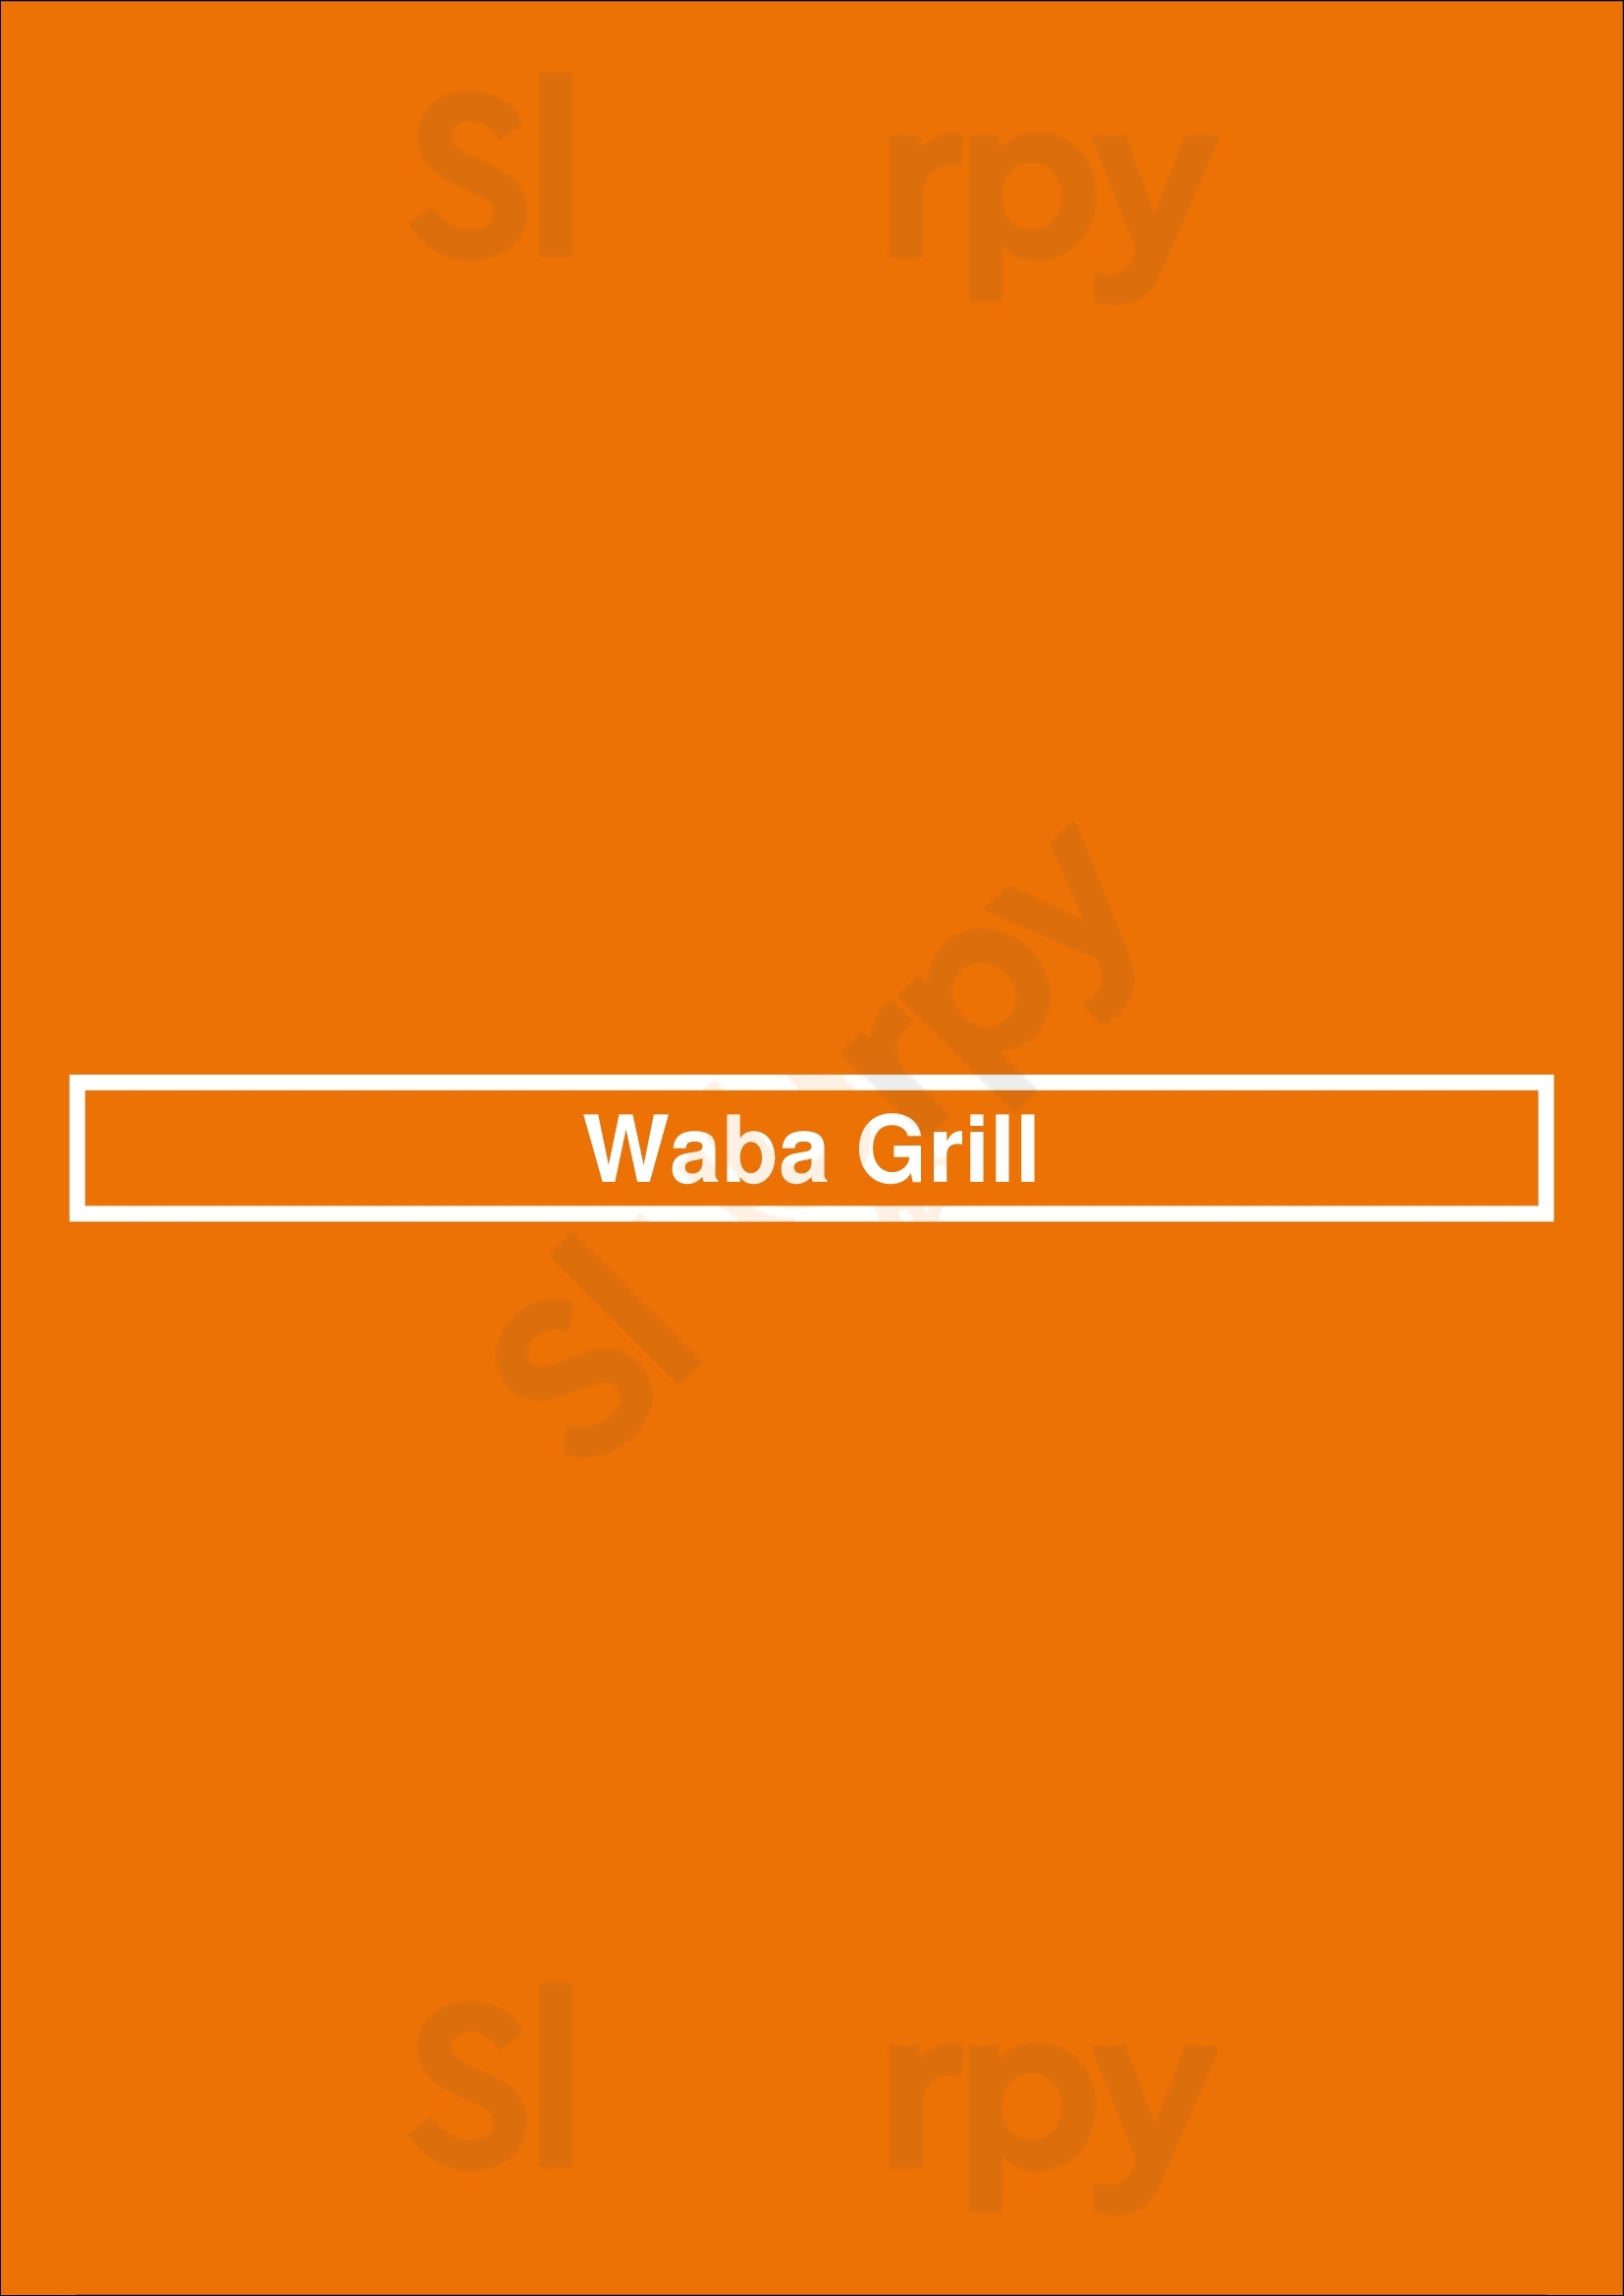 Waba Grill Los Angeles Menu - 1